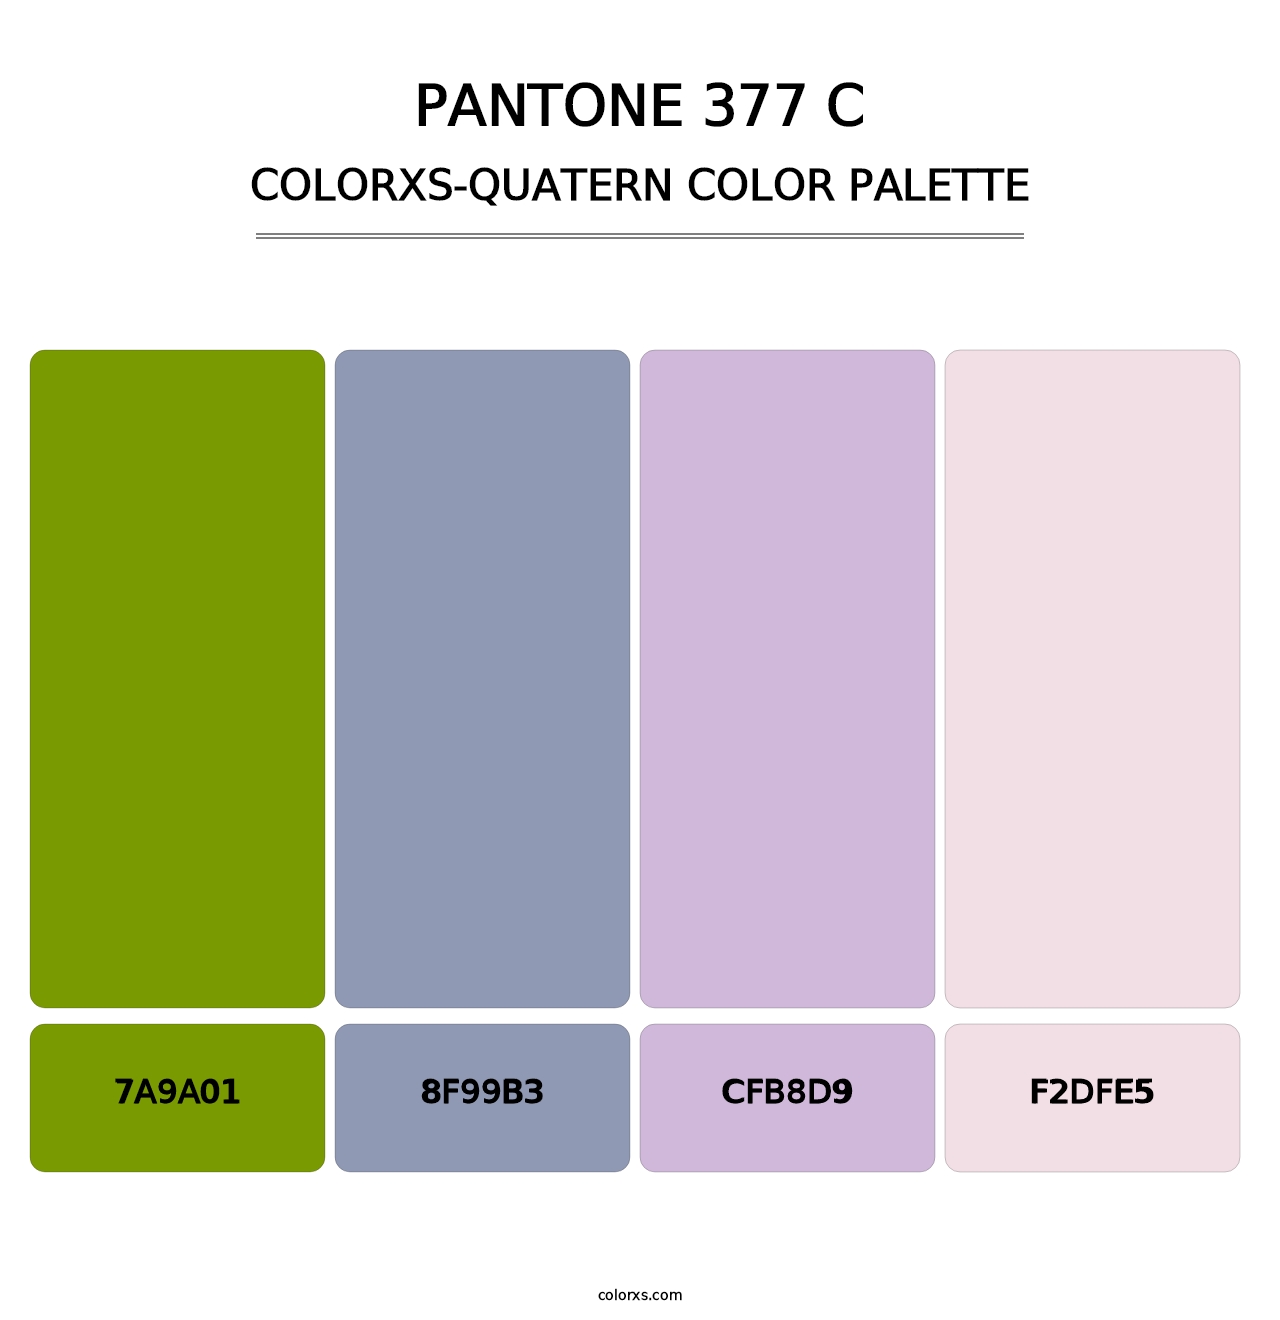 PANTONE 377 C - Colorxs Quatern Palette